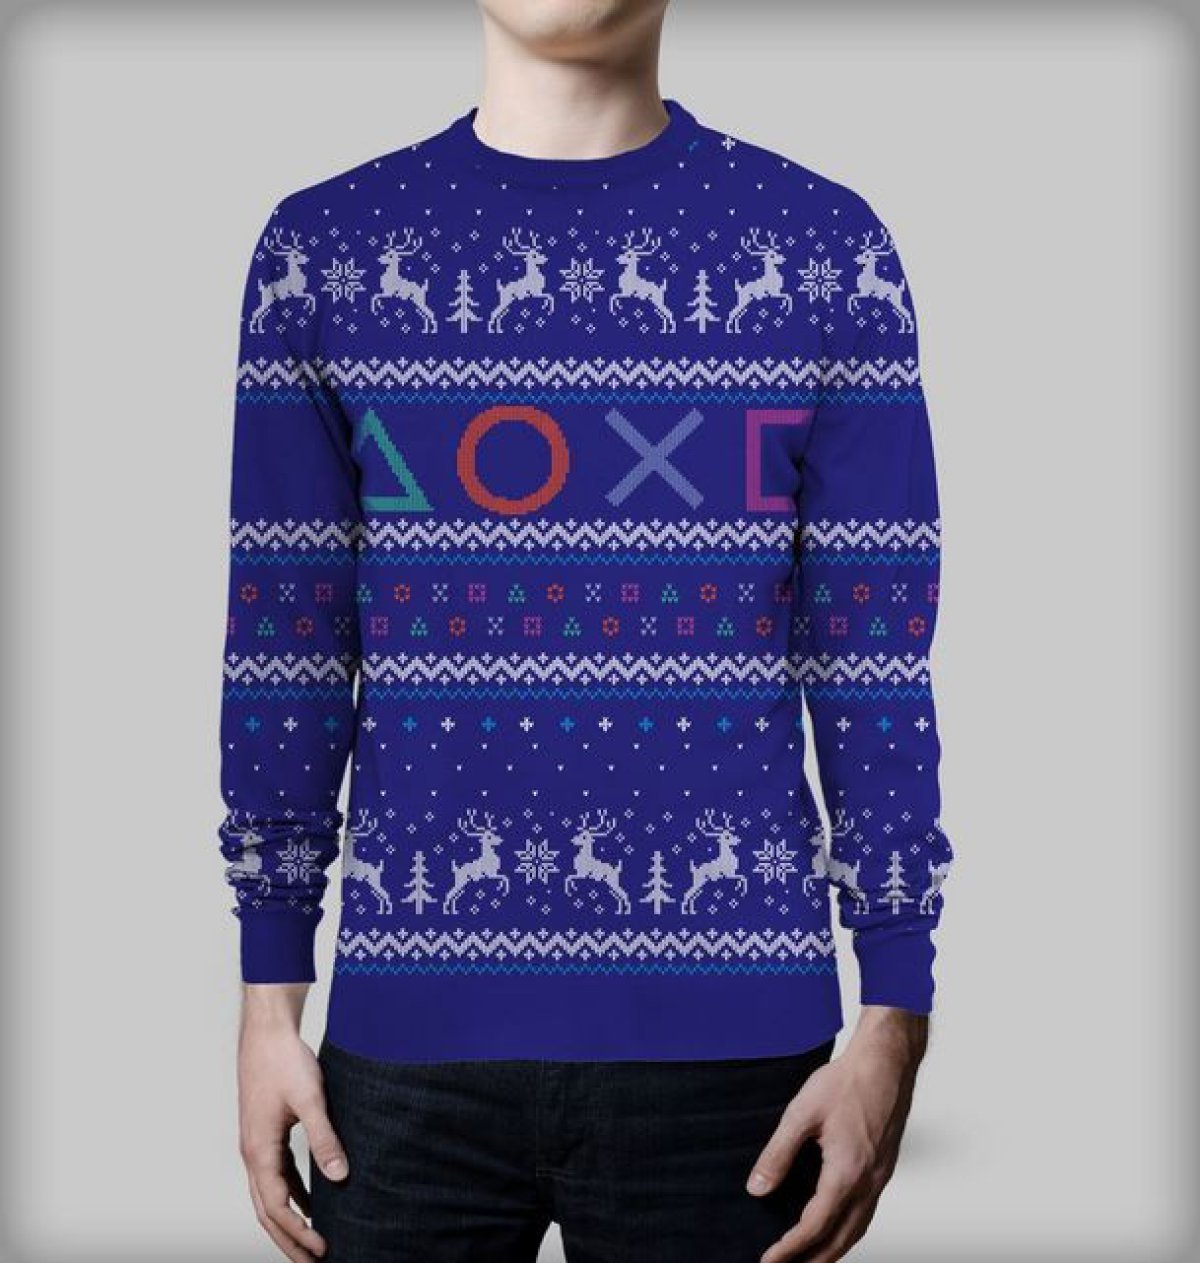 Los mejores sweaters navideños para gamers!